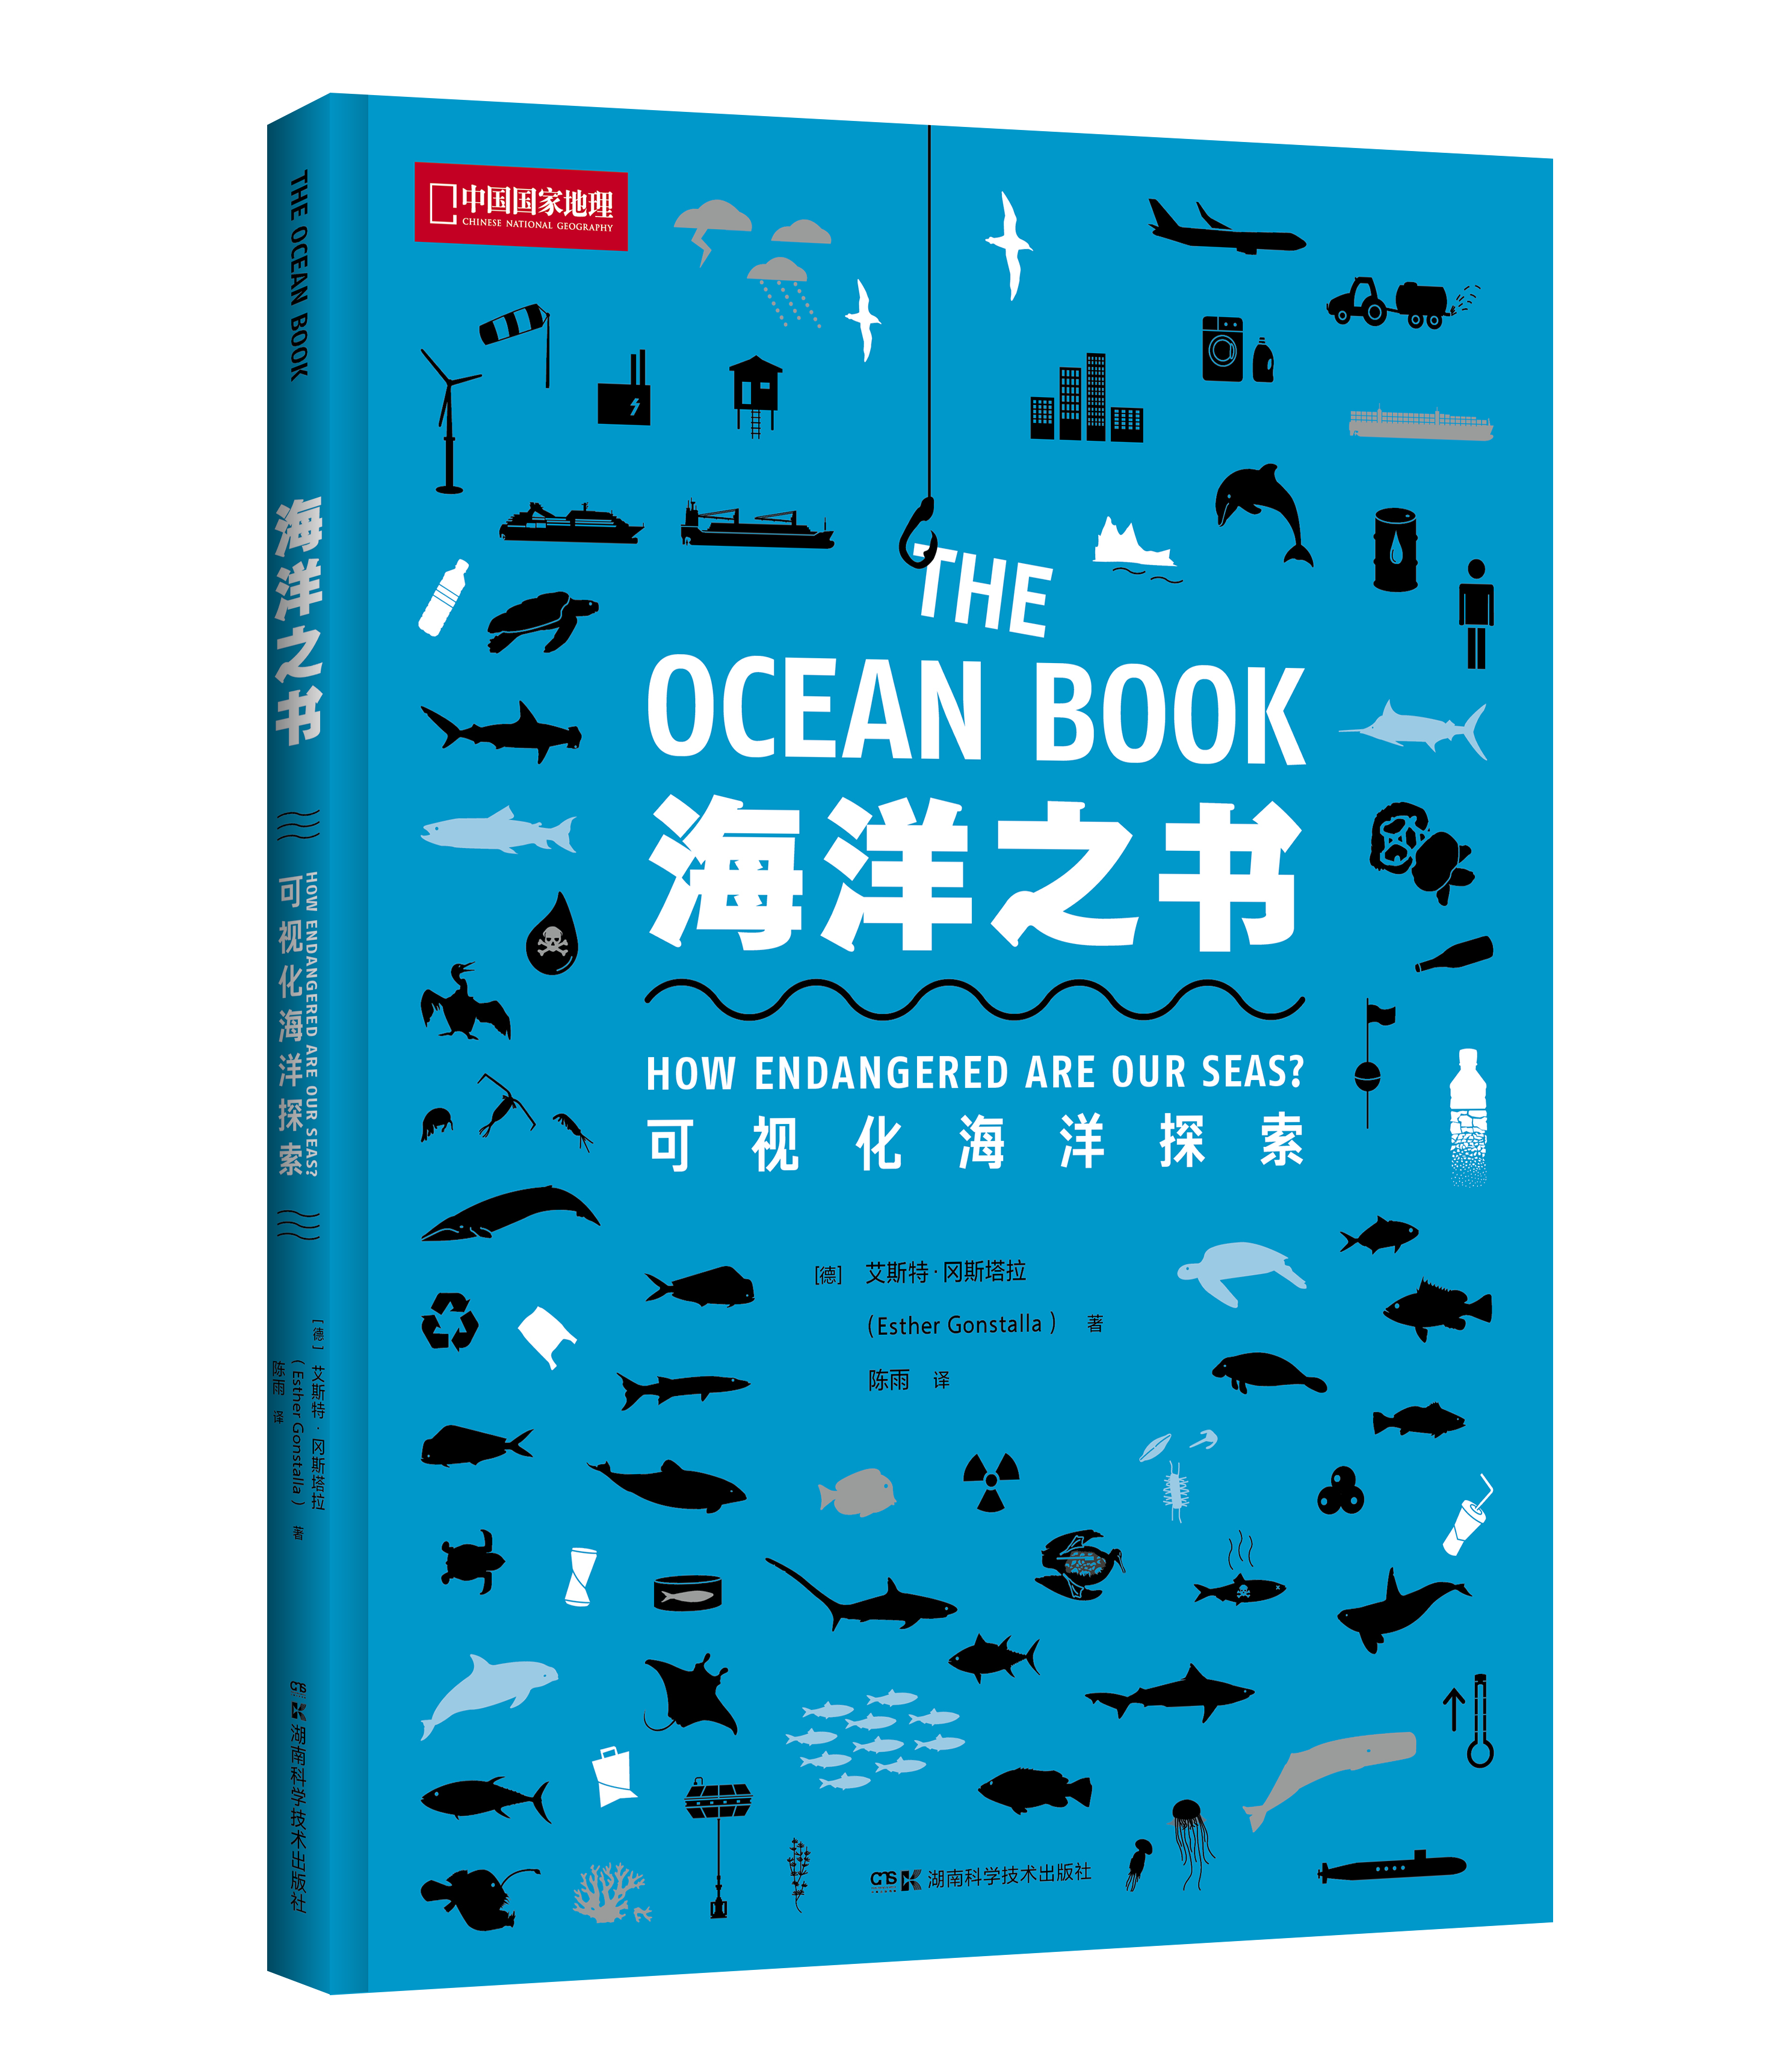 【限时特惠】海洋之书：可视化海洋探索，以信息图的形式，综合呈现海洋系统和海洋生态现状 科普图书